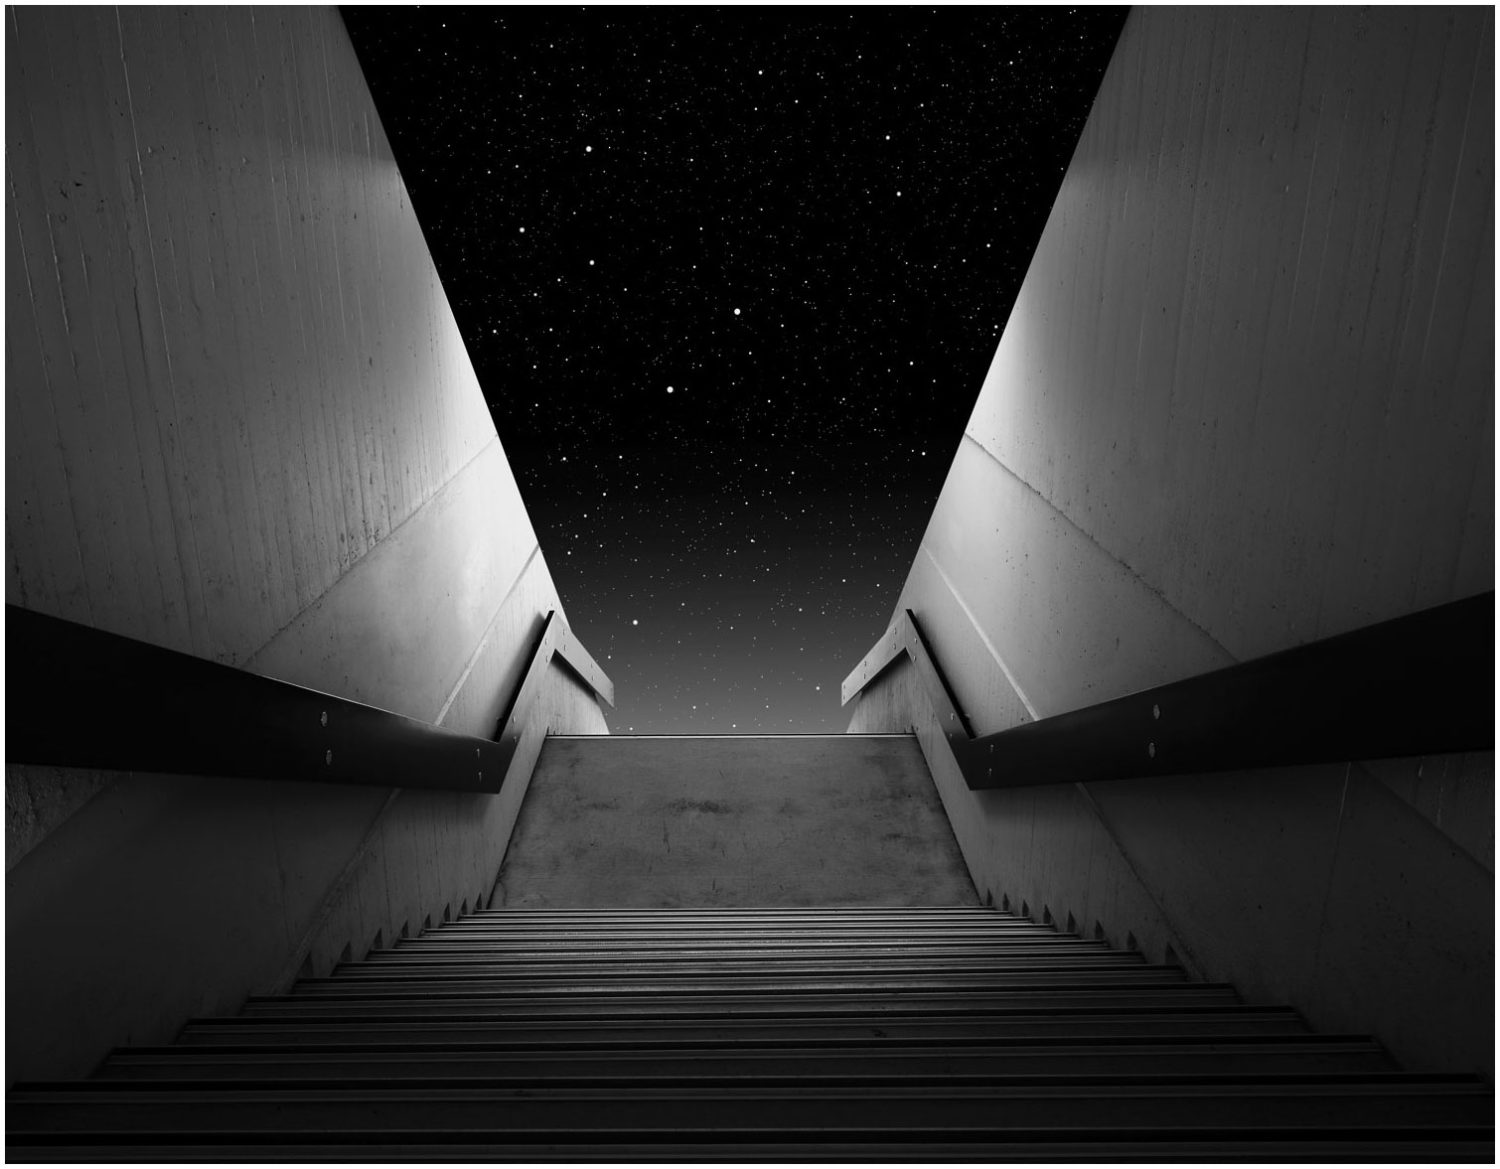 Bildmontage in Schwarz-Weiß: Eine Treppe, die hinab führt und im Hintergrund ein Sternenhimmel